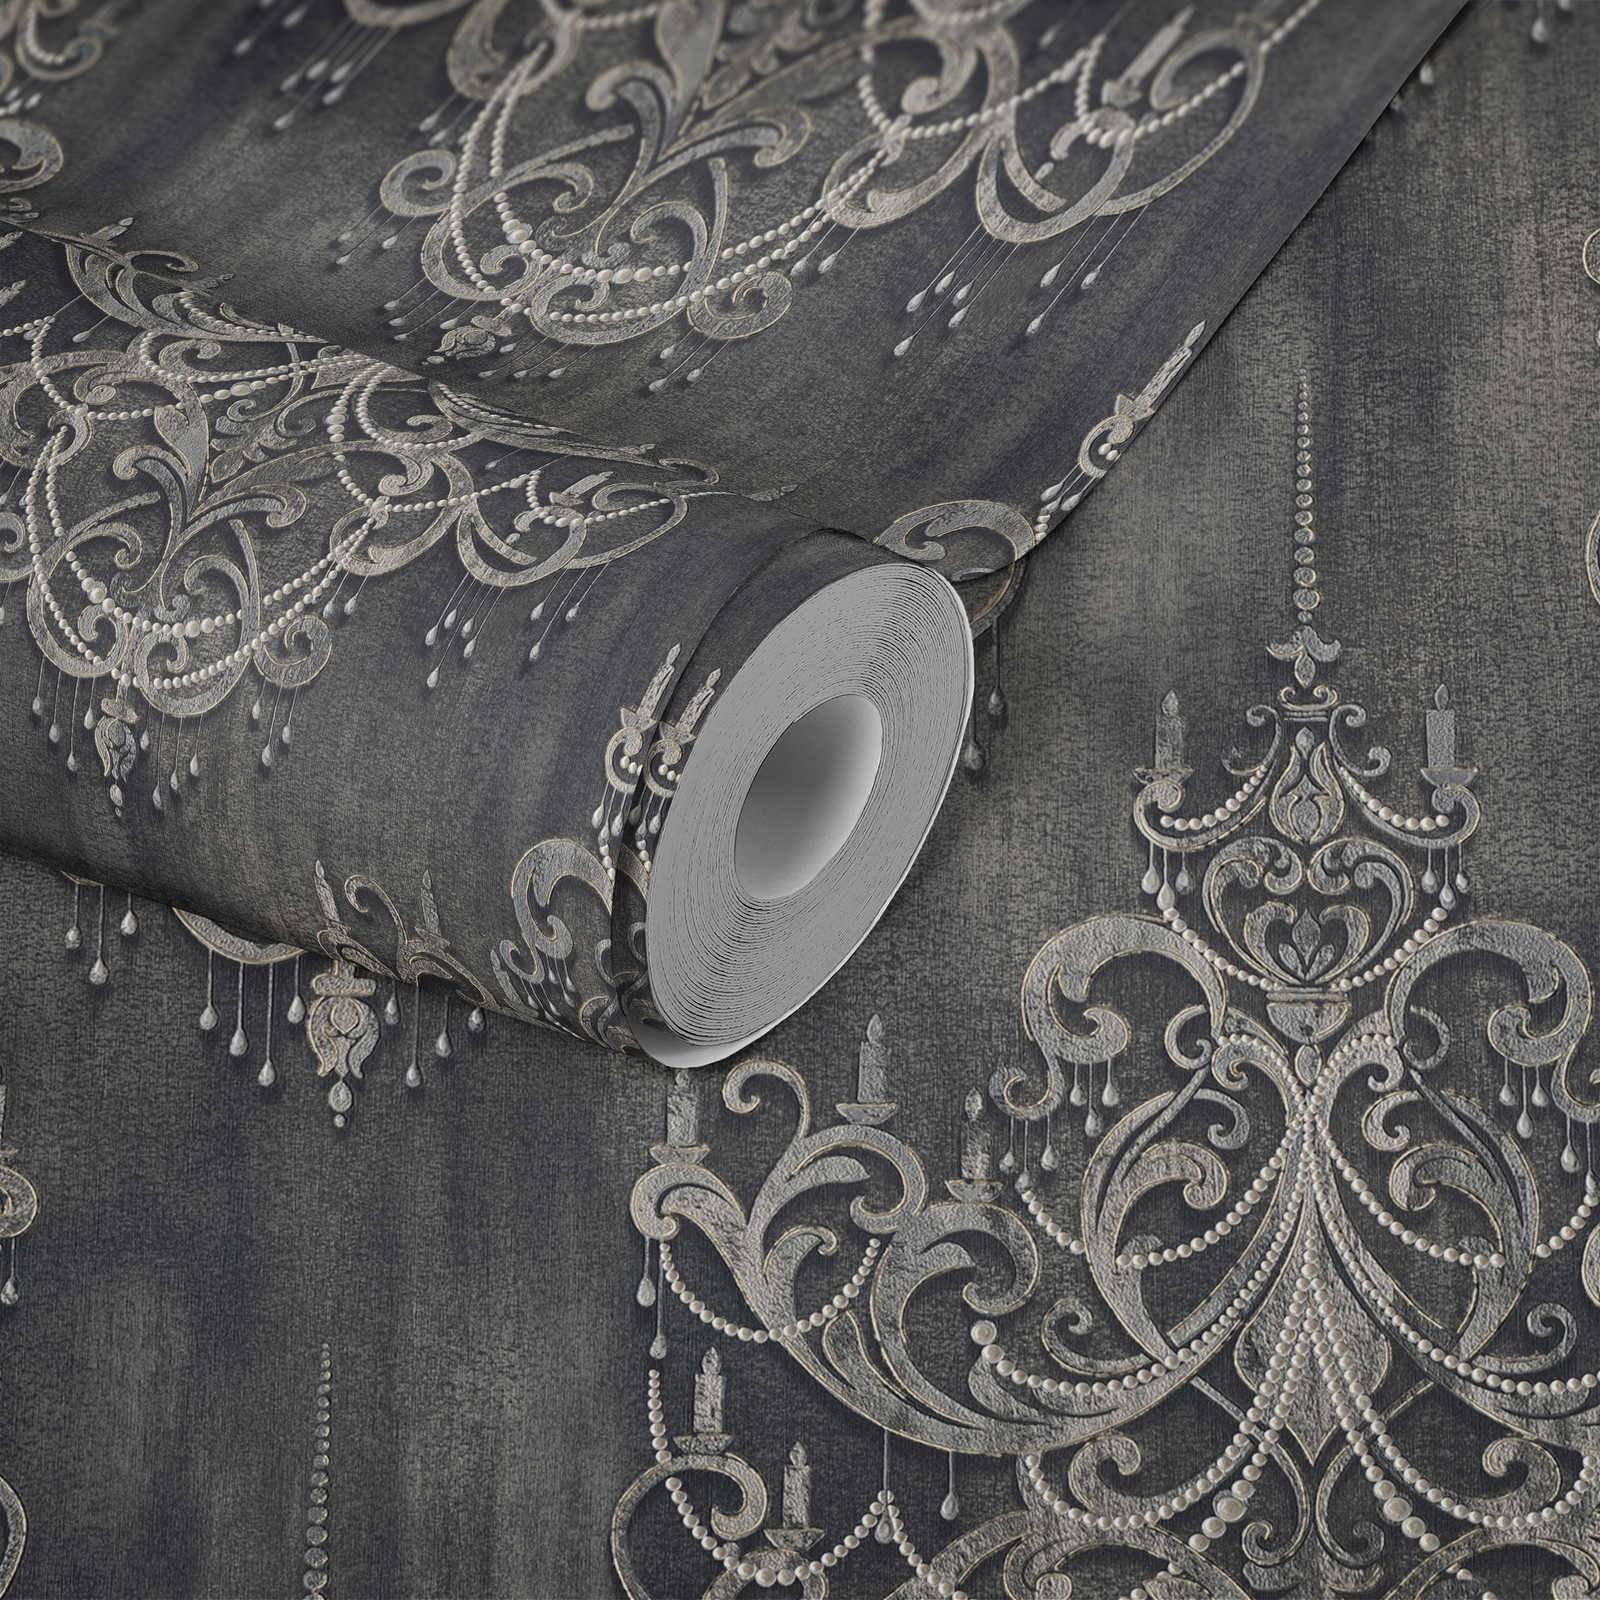             Zwart behang parelmoer patroon, ornamenten & metallic effect
        